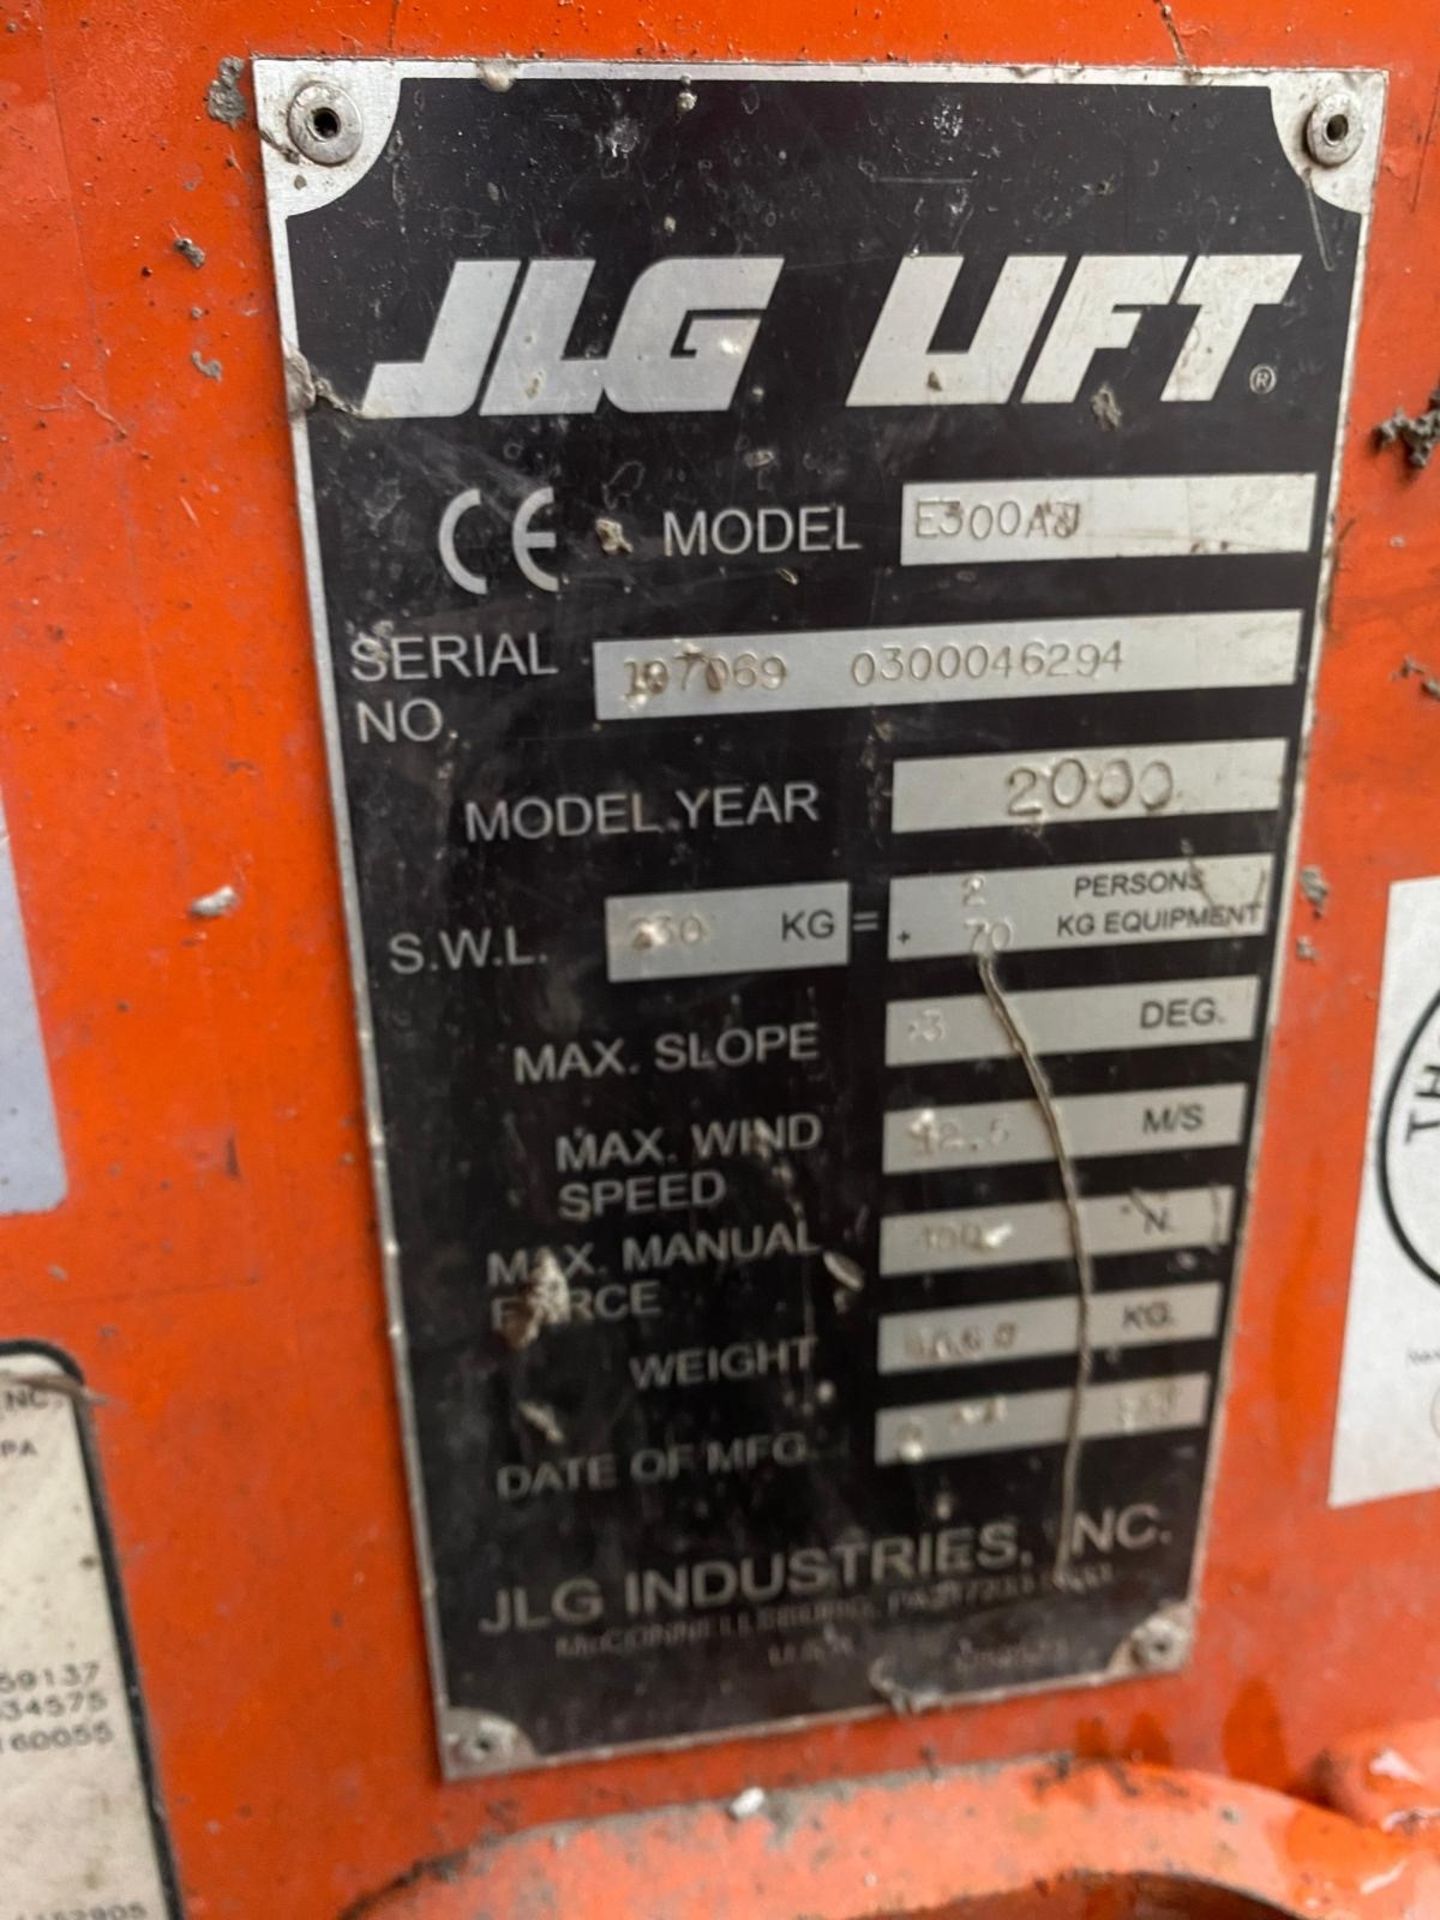 JLG Model E300 Cherry Picker Lift (2000 Model) - Bild 7 aus 12